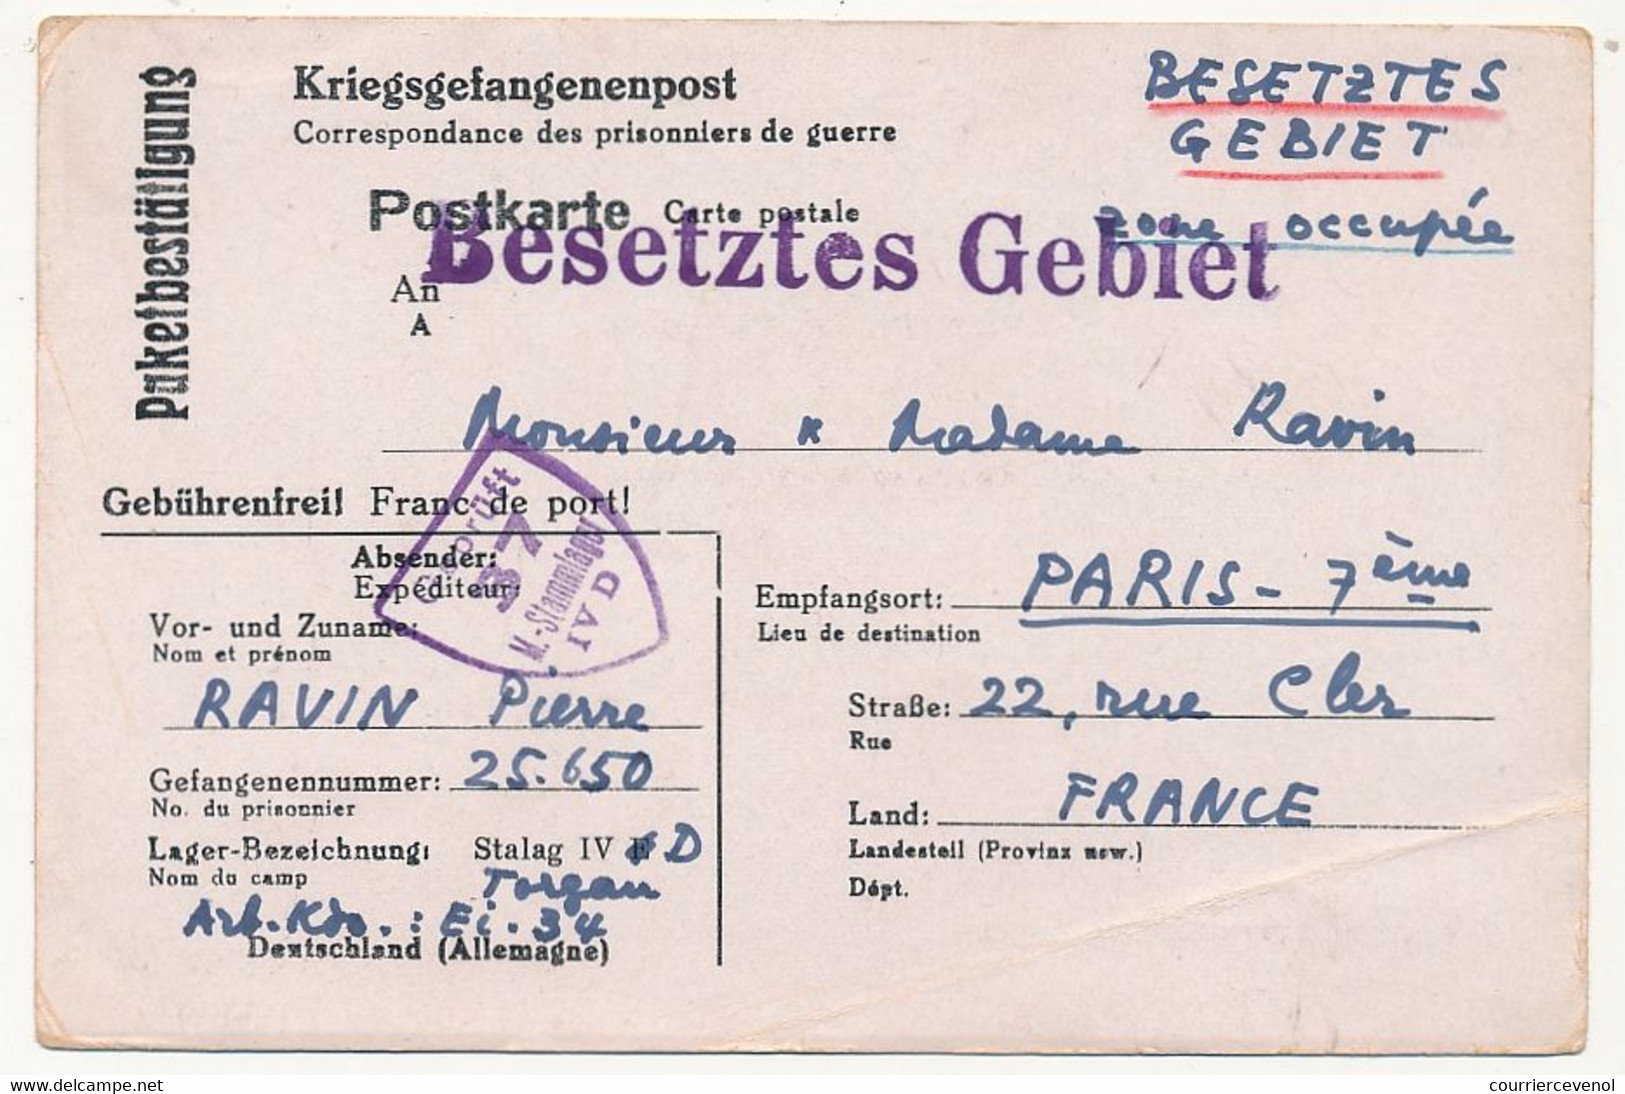 FRANCE - Carte Postale - Avis De Réception De Colis - Stalag IVD Censeur Geprüft 37 - Guerre De 1939-45